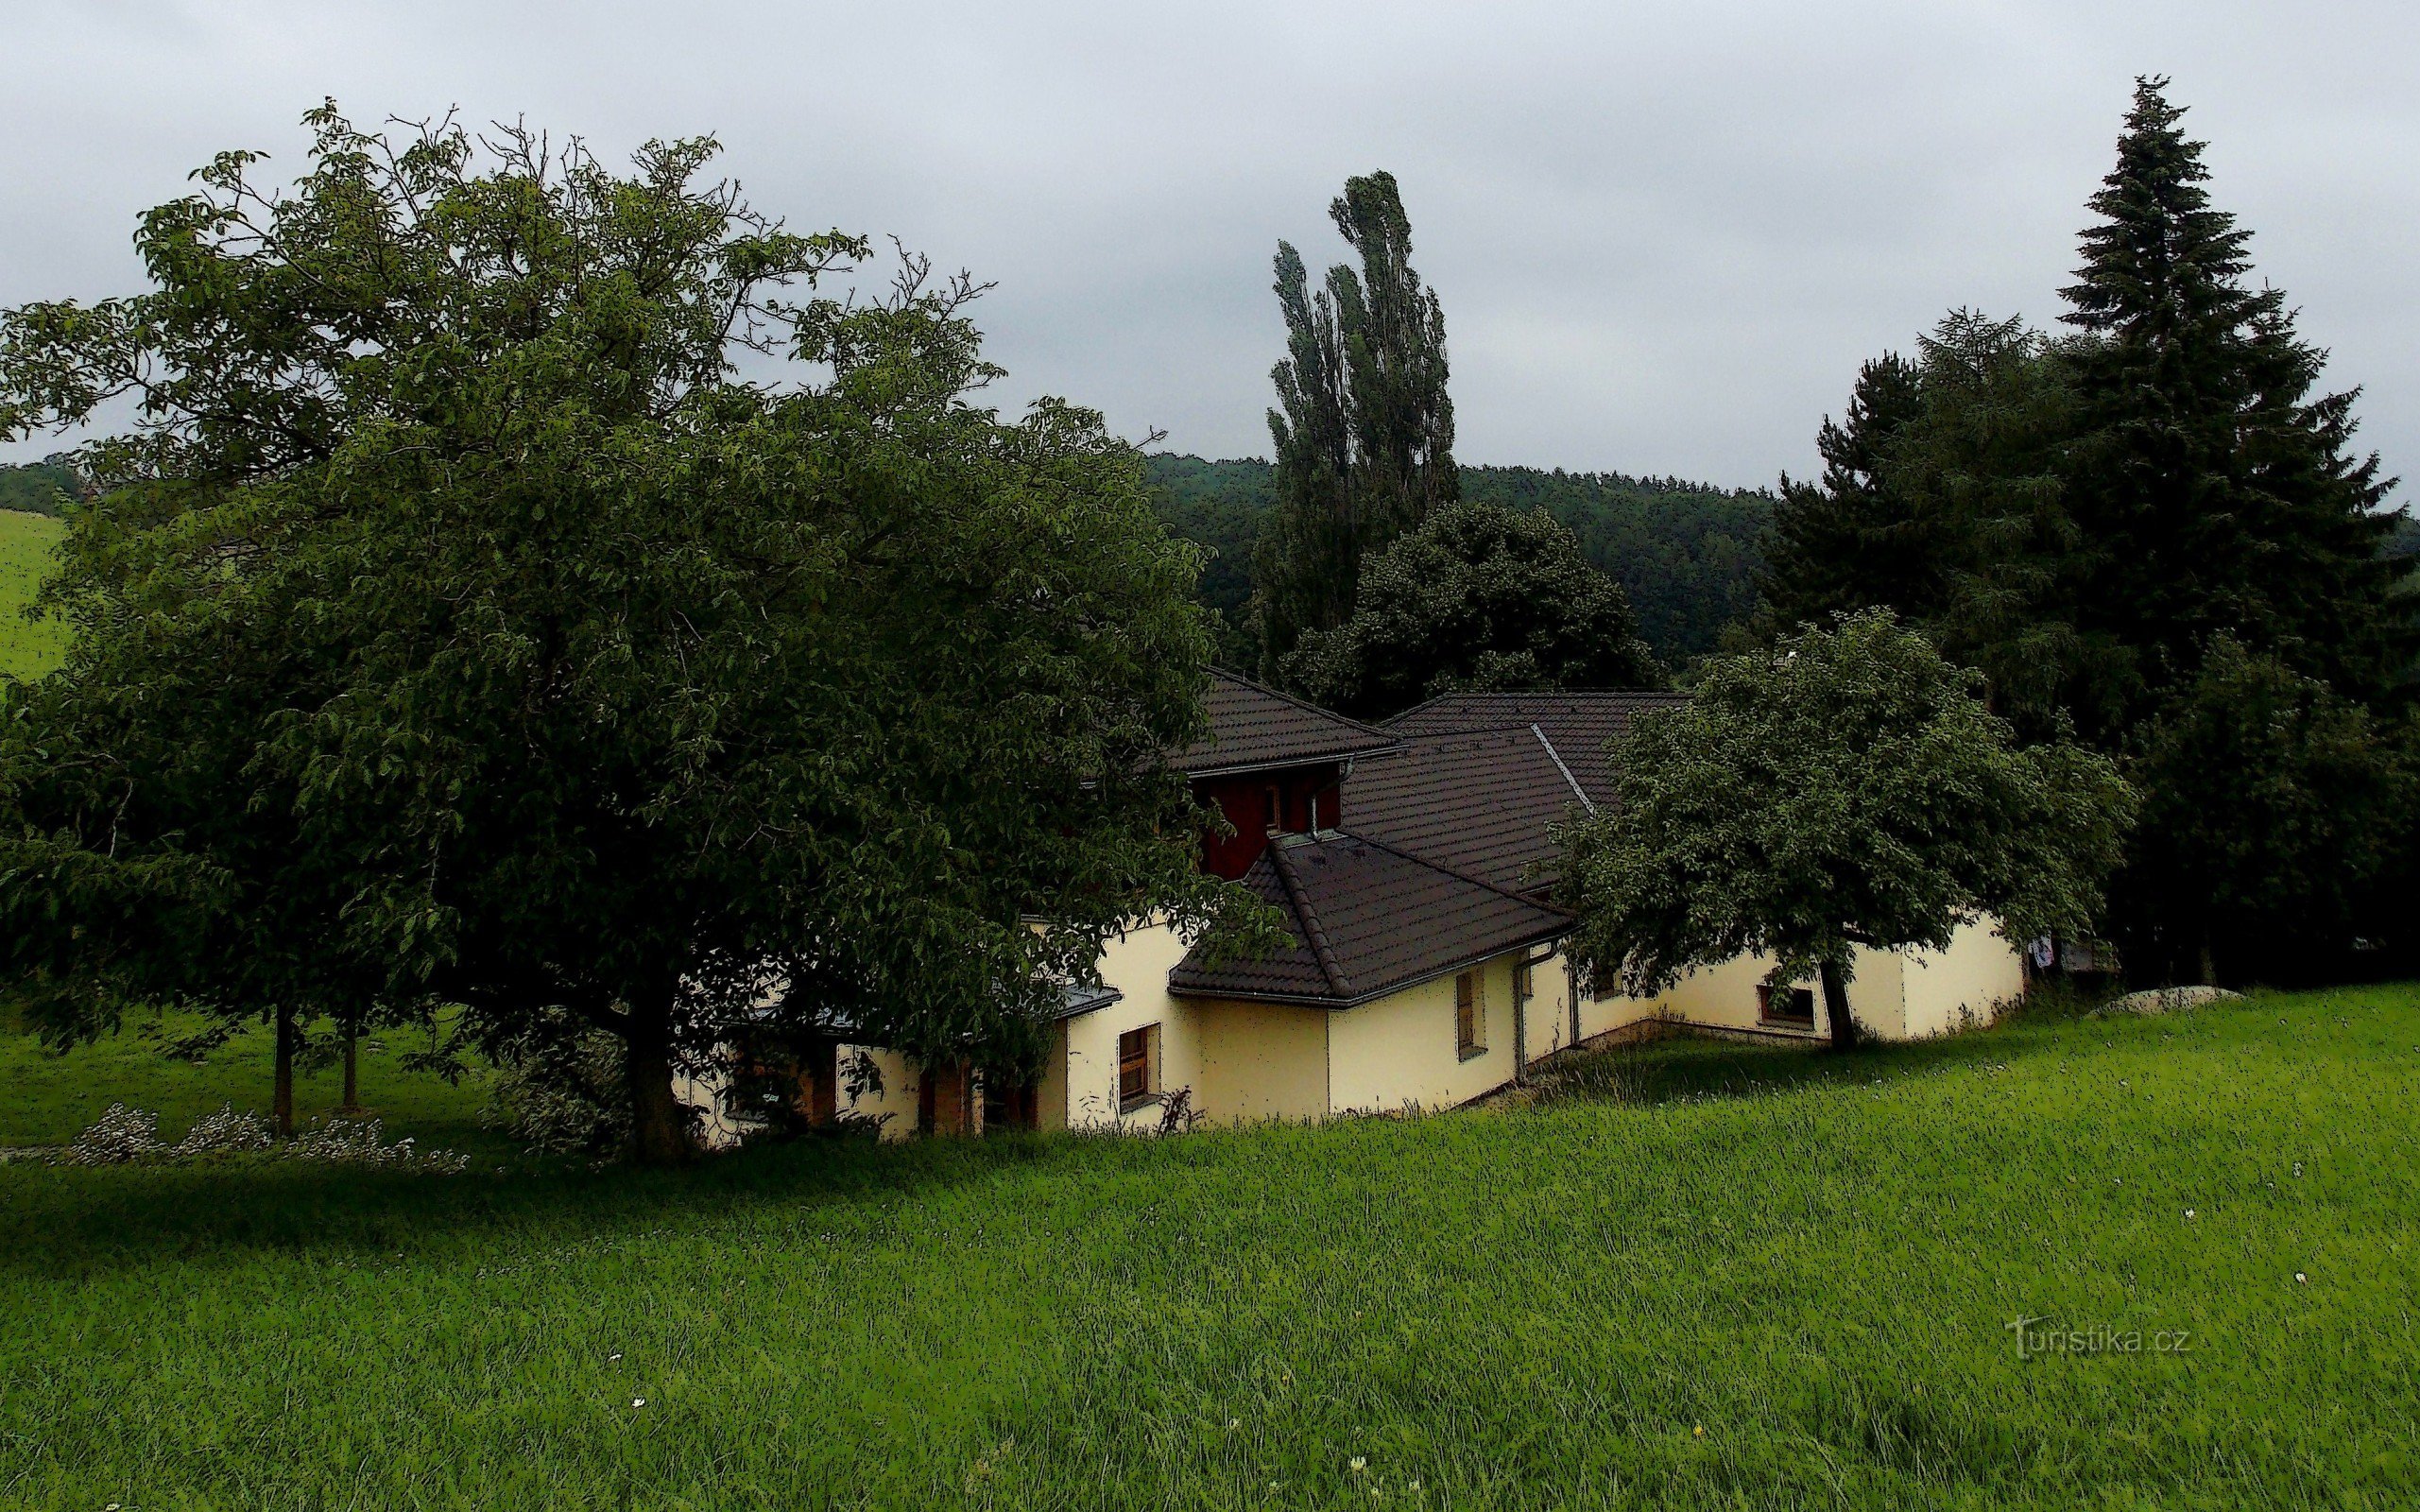 Una passeggiata estiva intorno a Zlín attraverso le radure di Želechovice